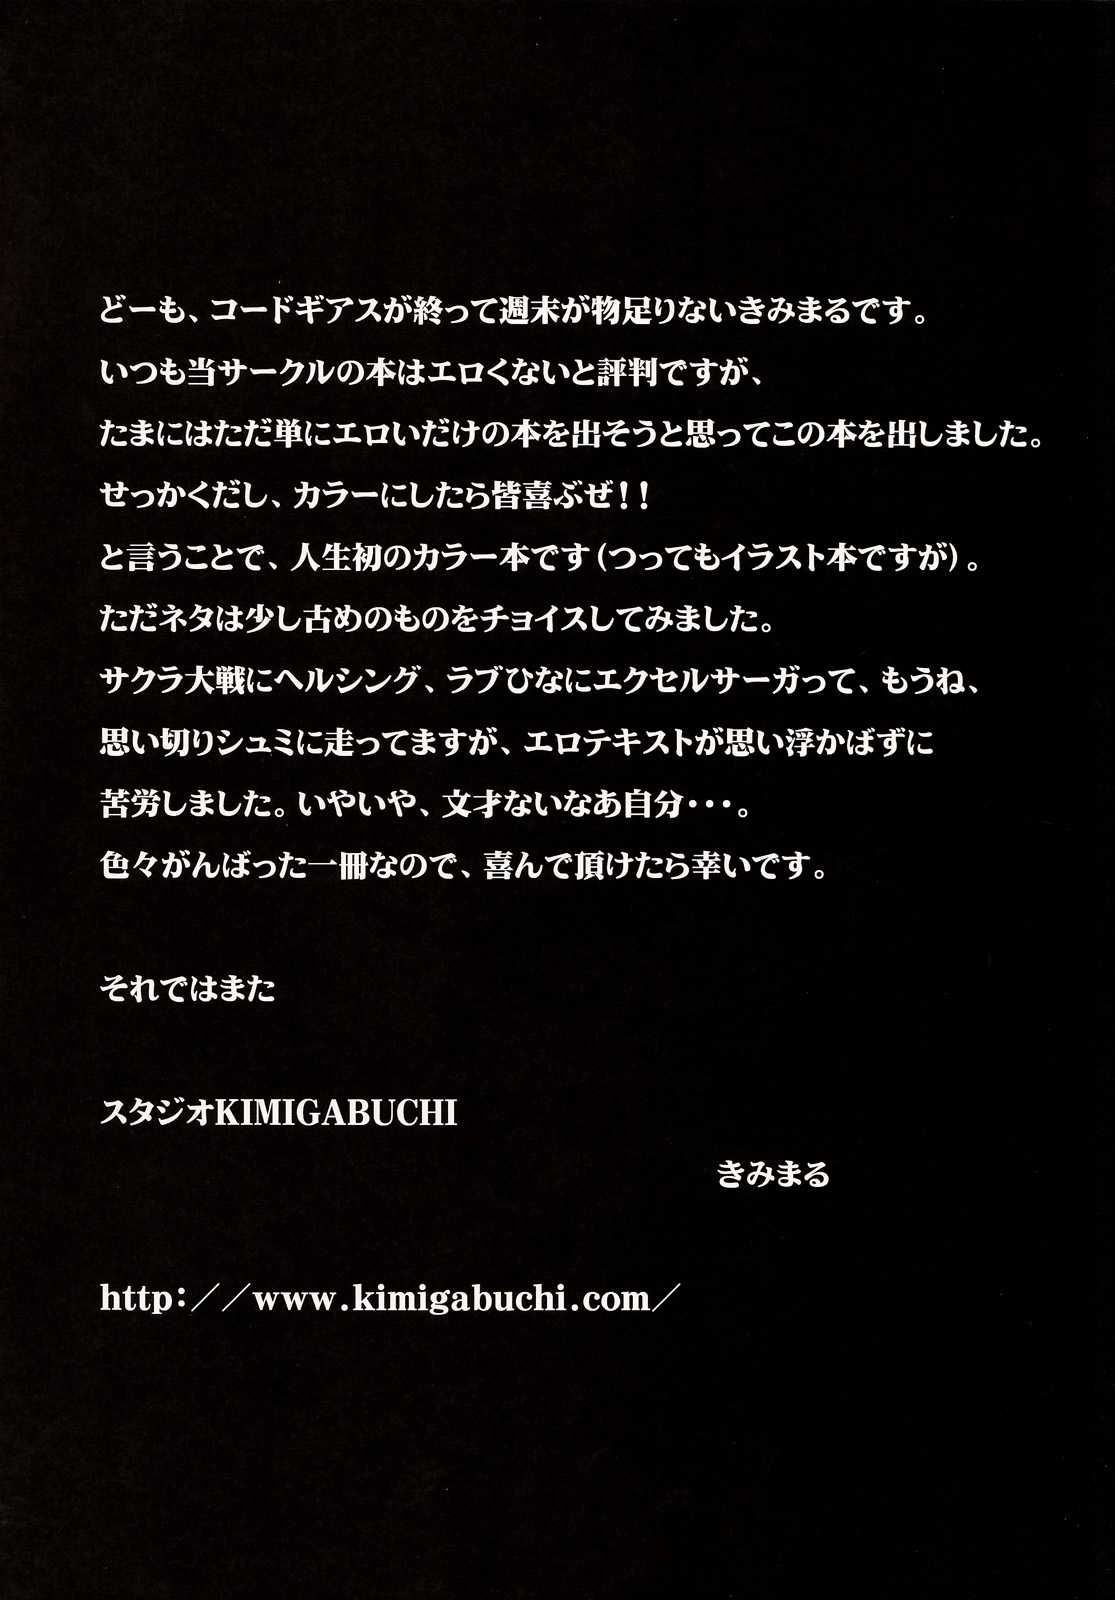 [Studio KIMIGABUCHI] bekkan kimigabuchi (various) {Full Color} {masterbloodfer} 